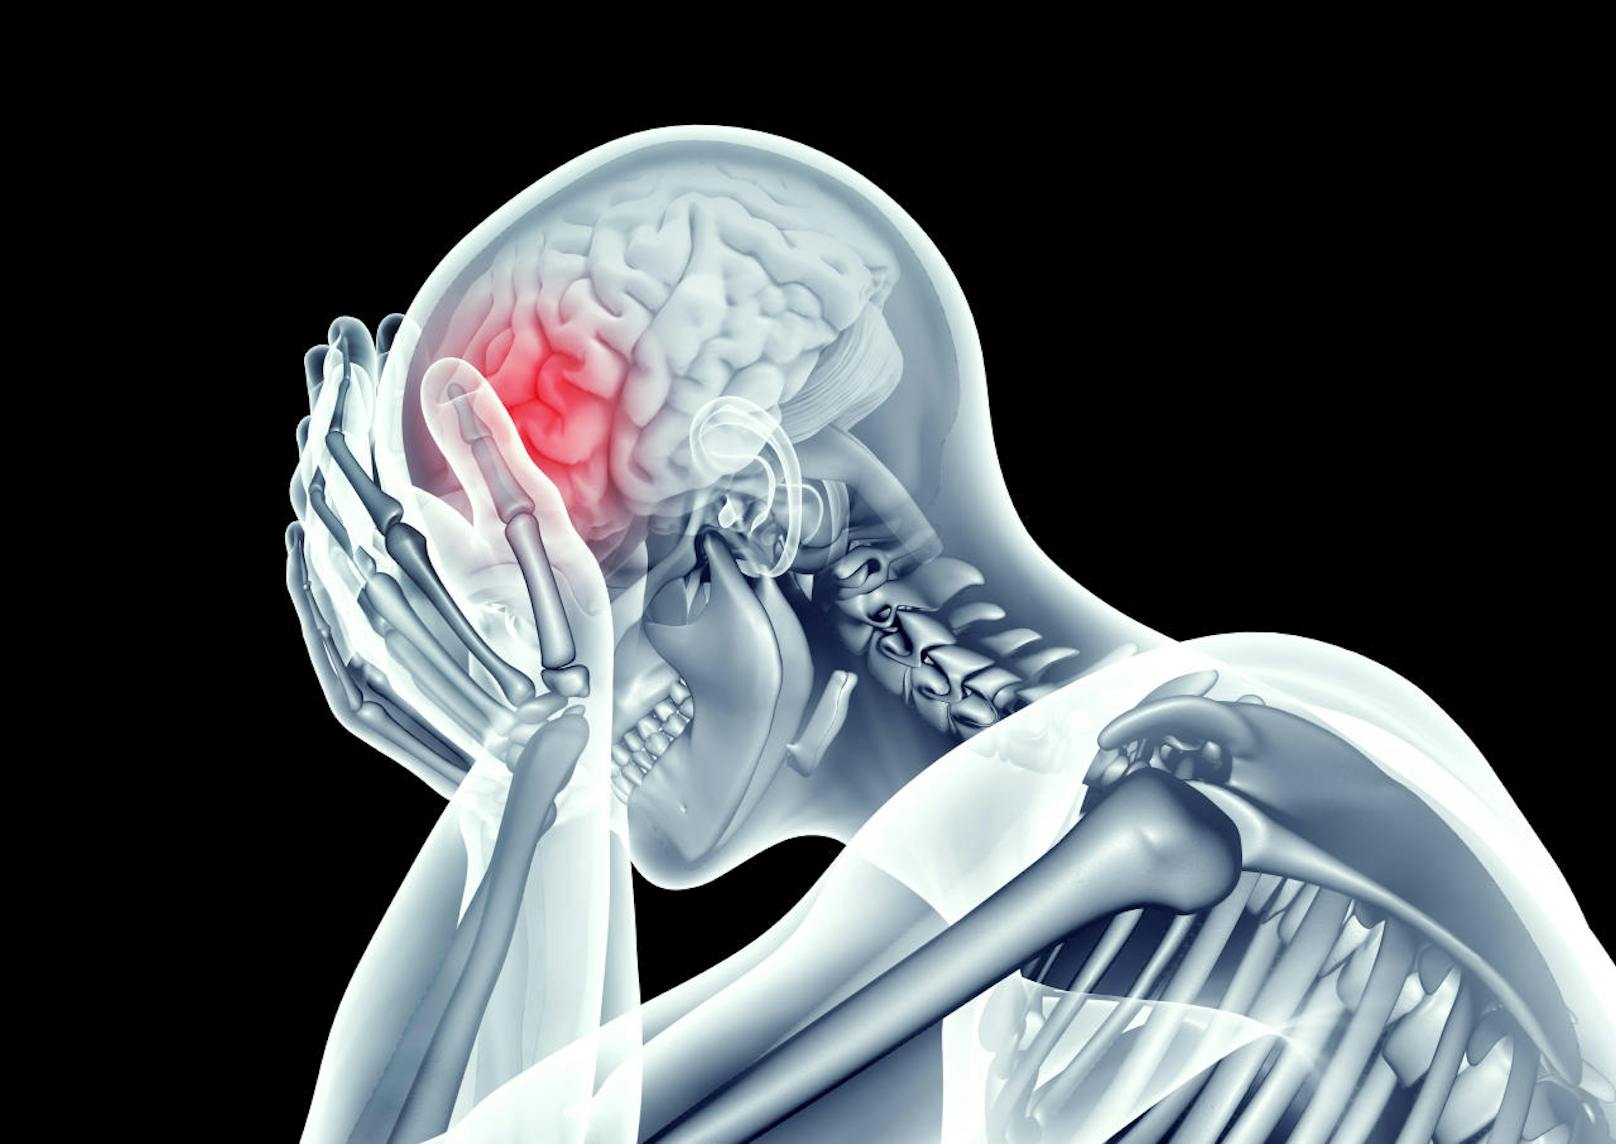 Fest steht, dass die Migräne eine neurobiologische Funktionsstörung ist und erbliche Faktoren eine Rolle spielen.